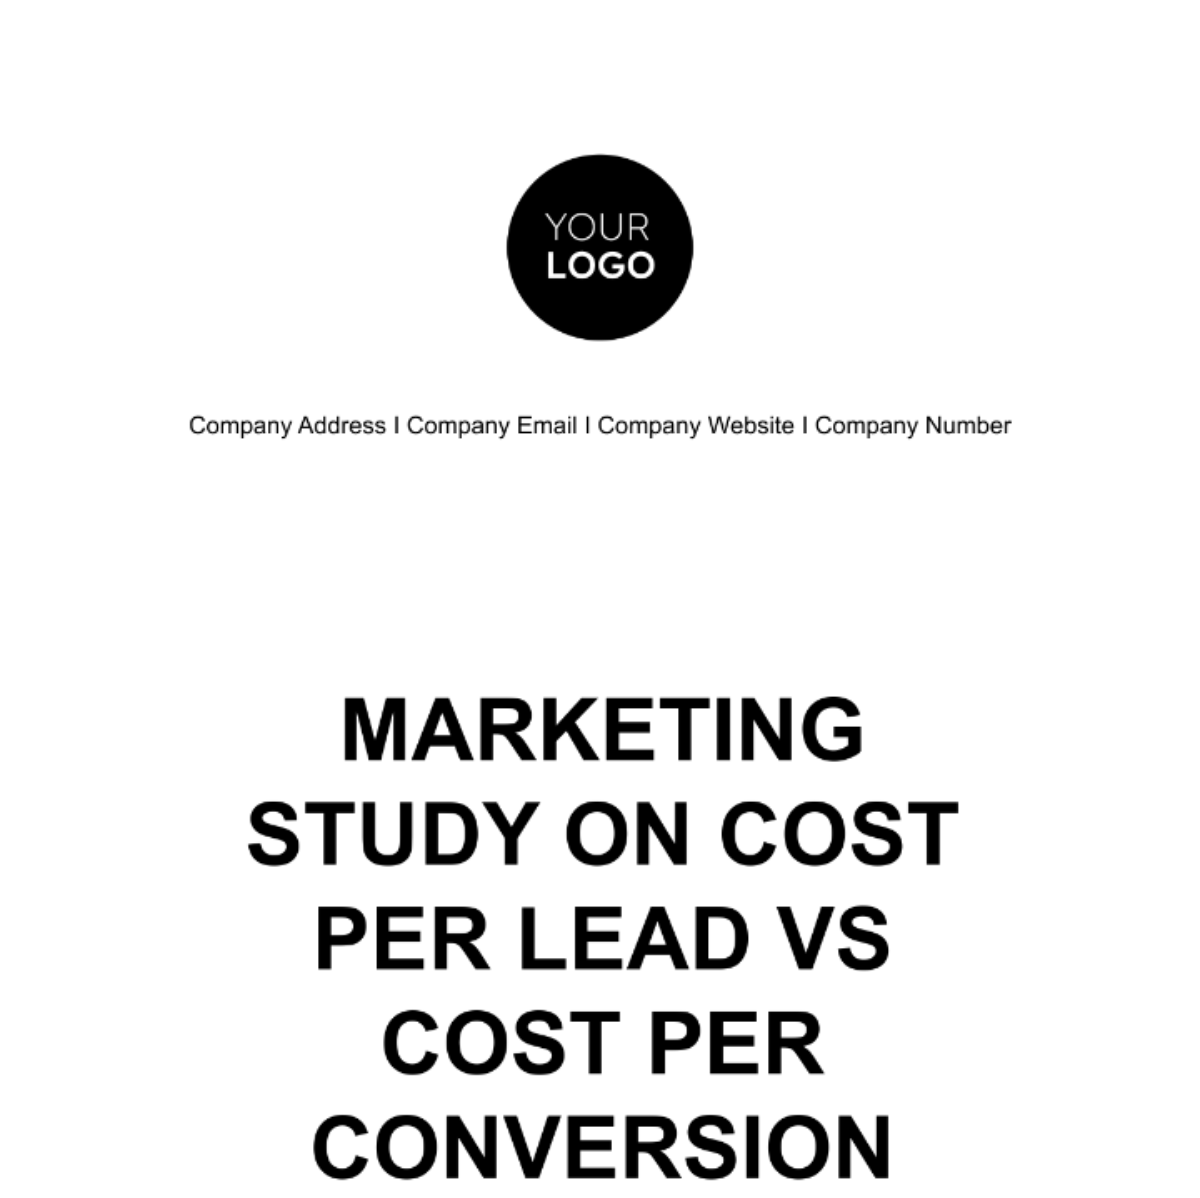 Free Marketing Study on Cost per Lead vs Cost per Conversion Template